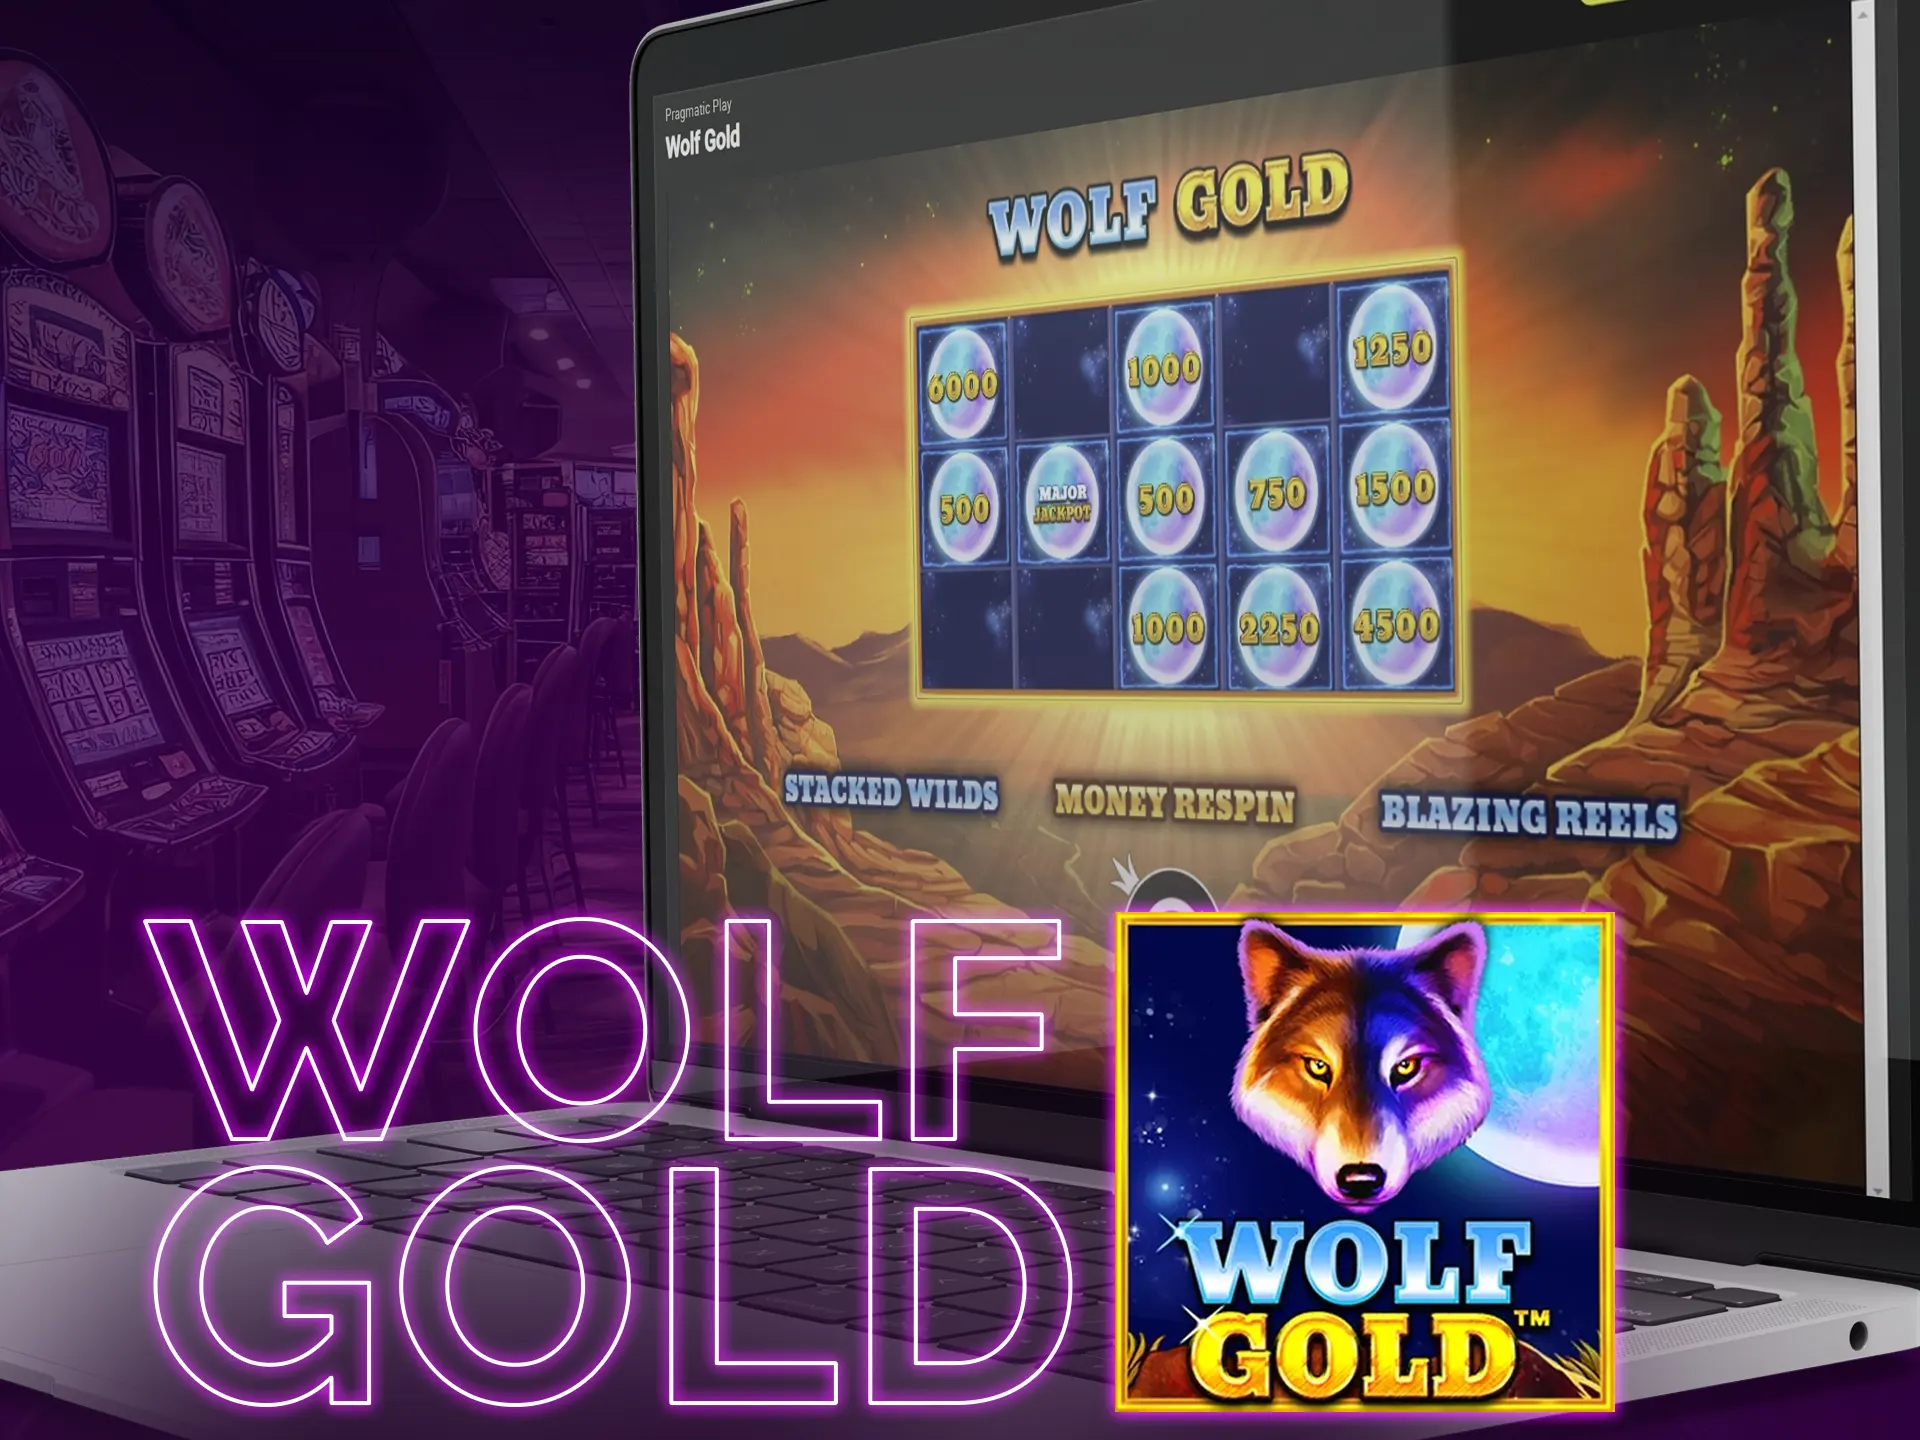 Wolf Gold is ensuring big winnings.